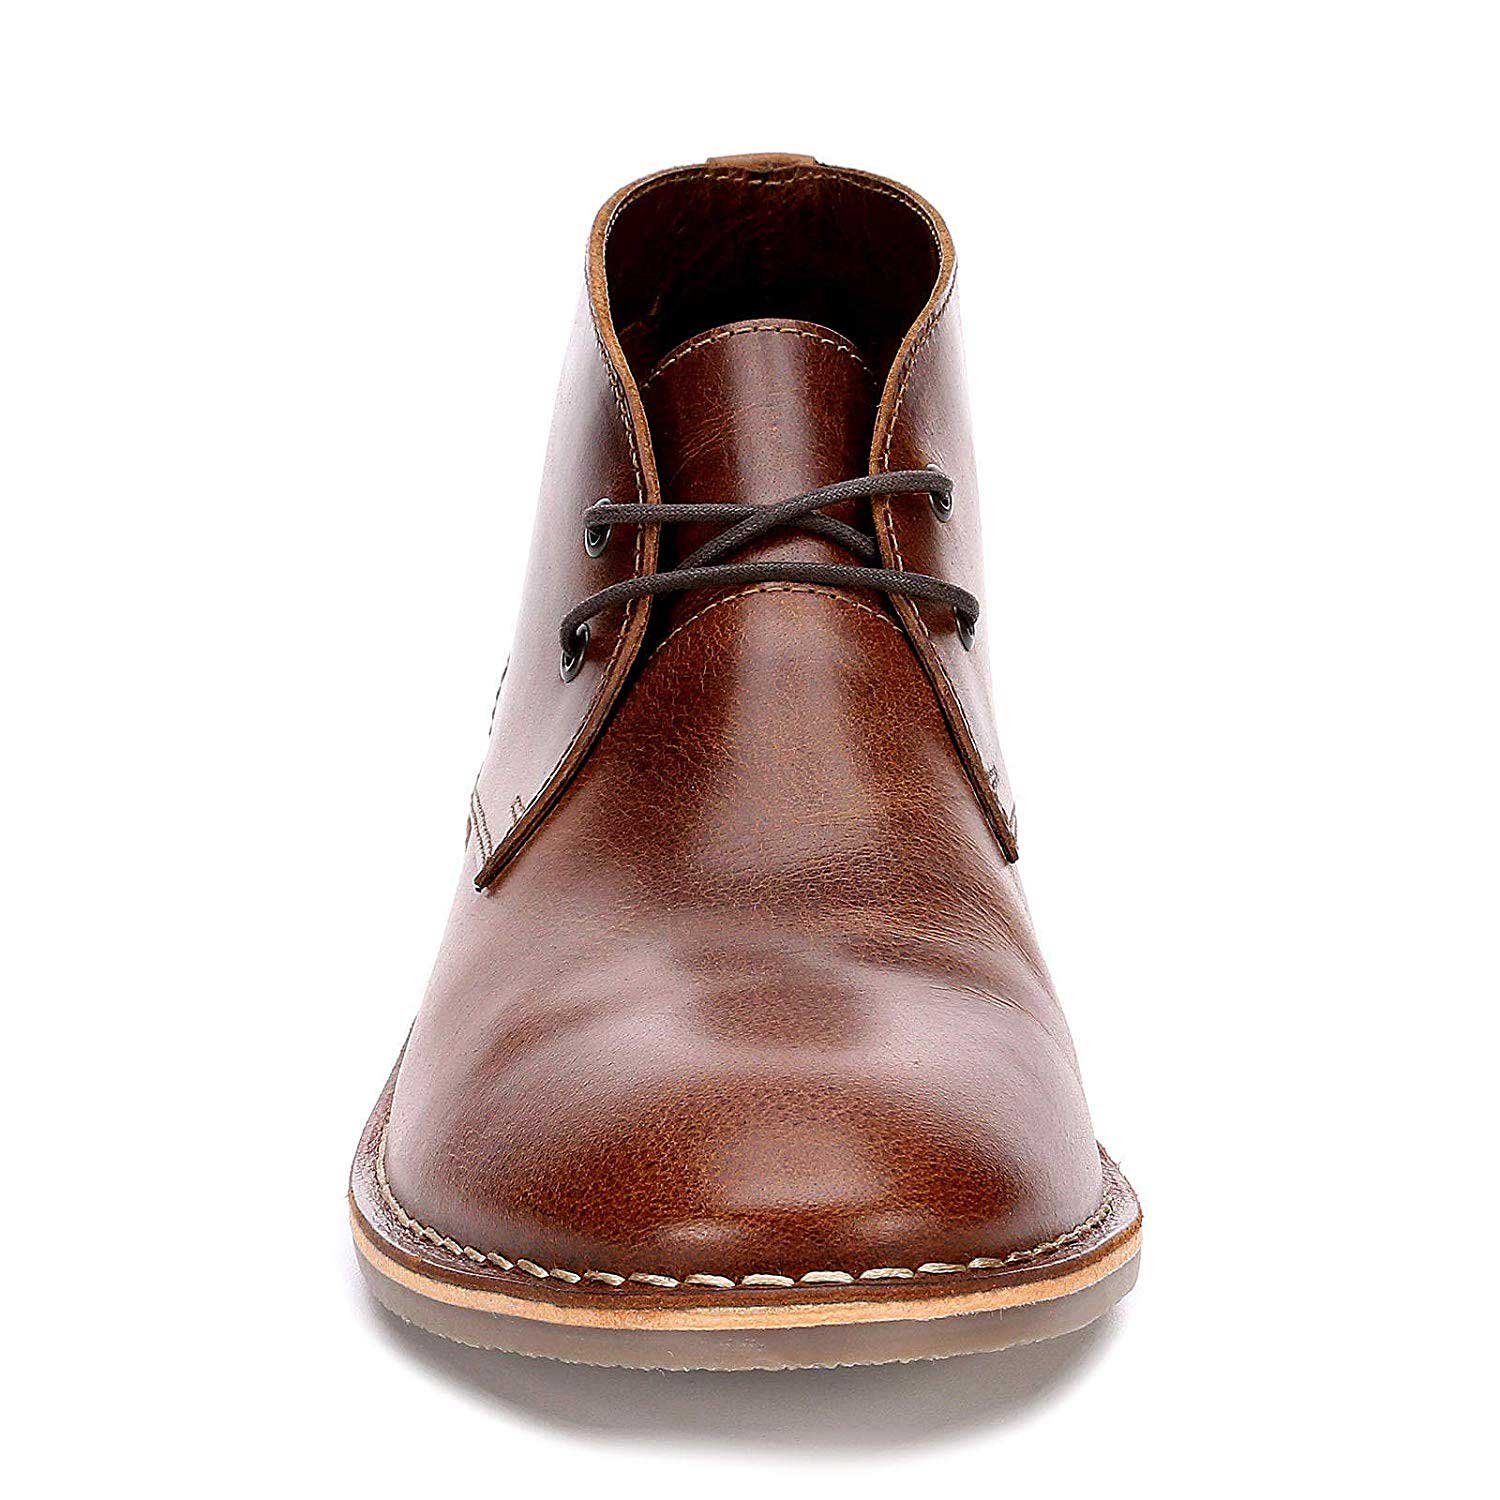 Dade Leather Chukka Boot